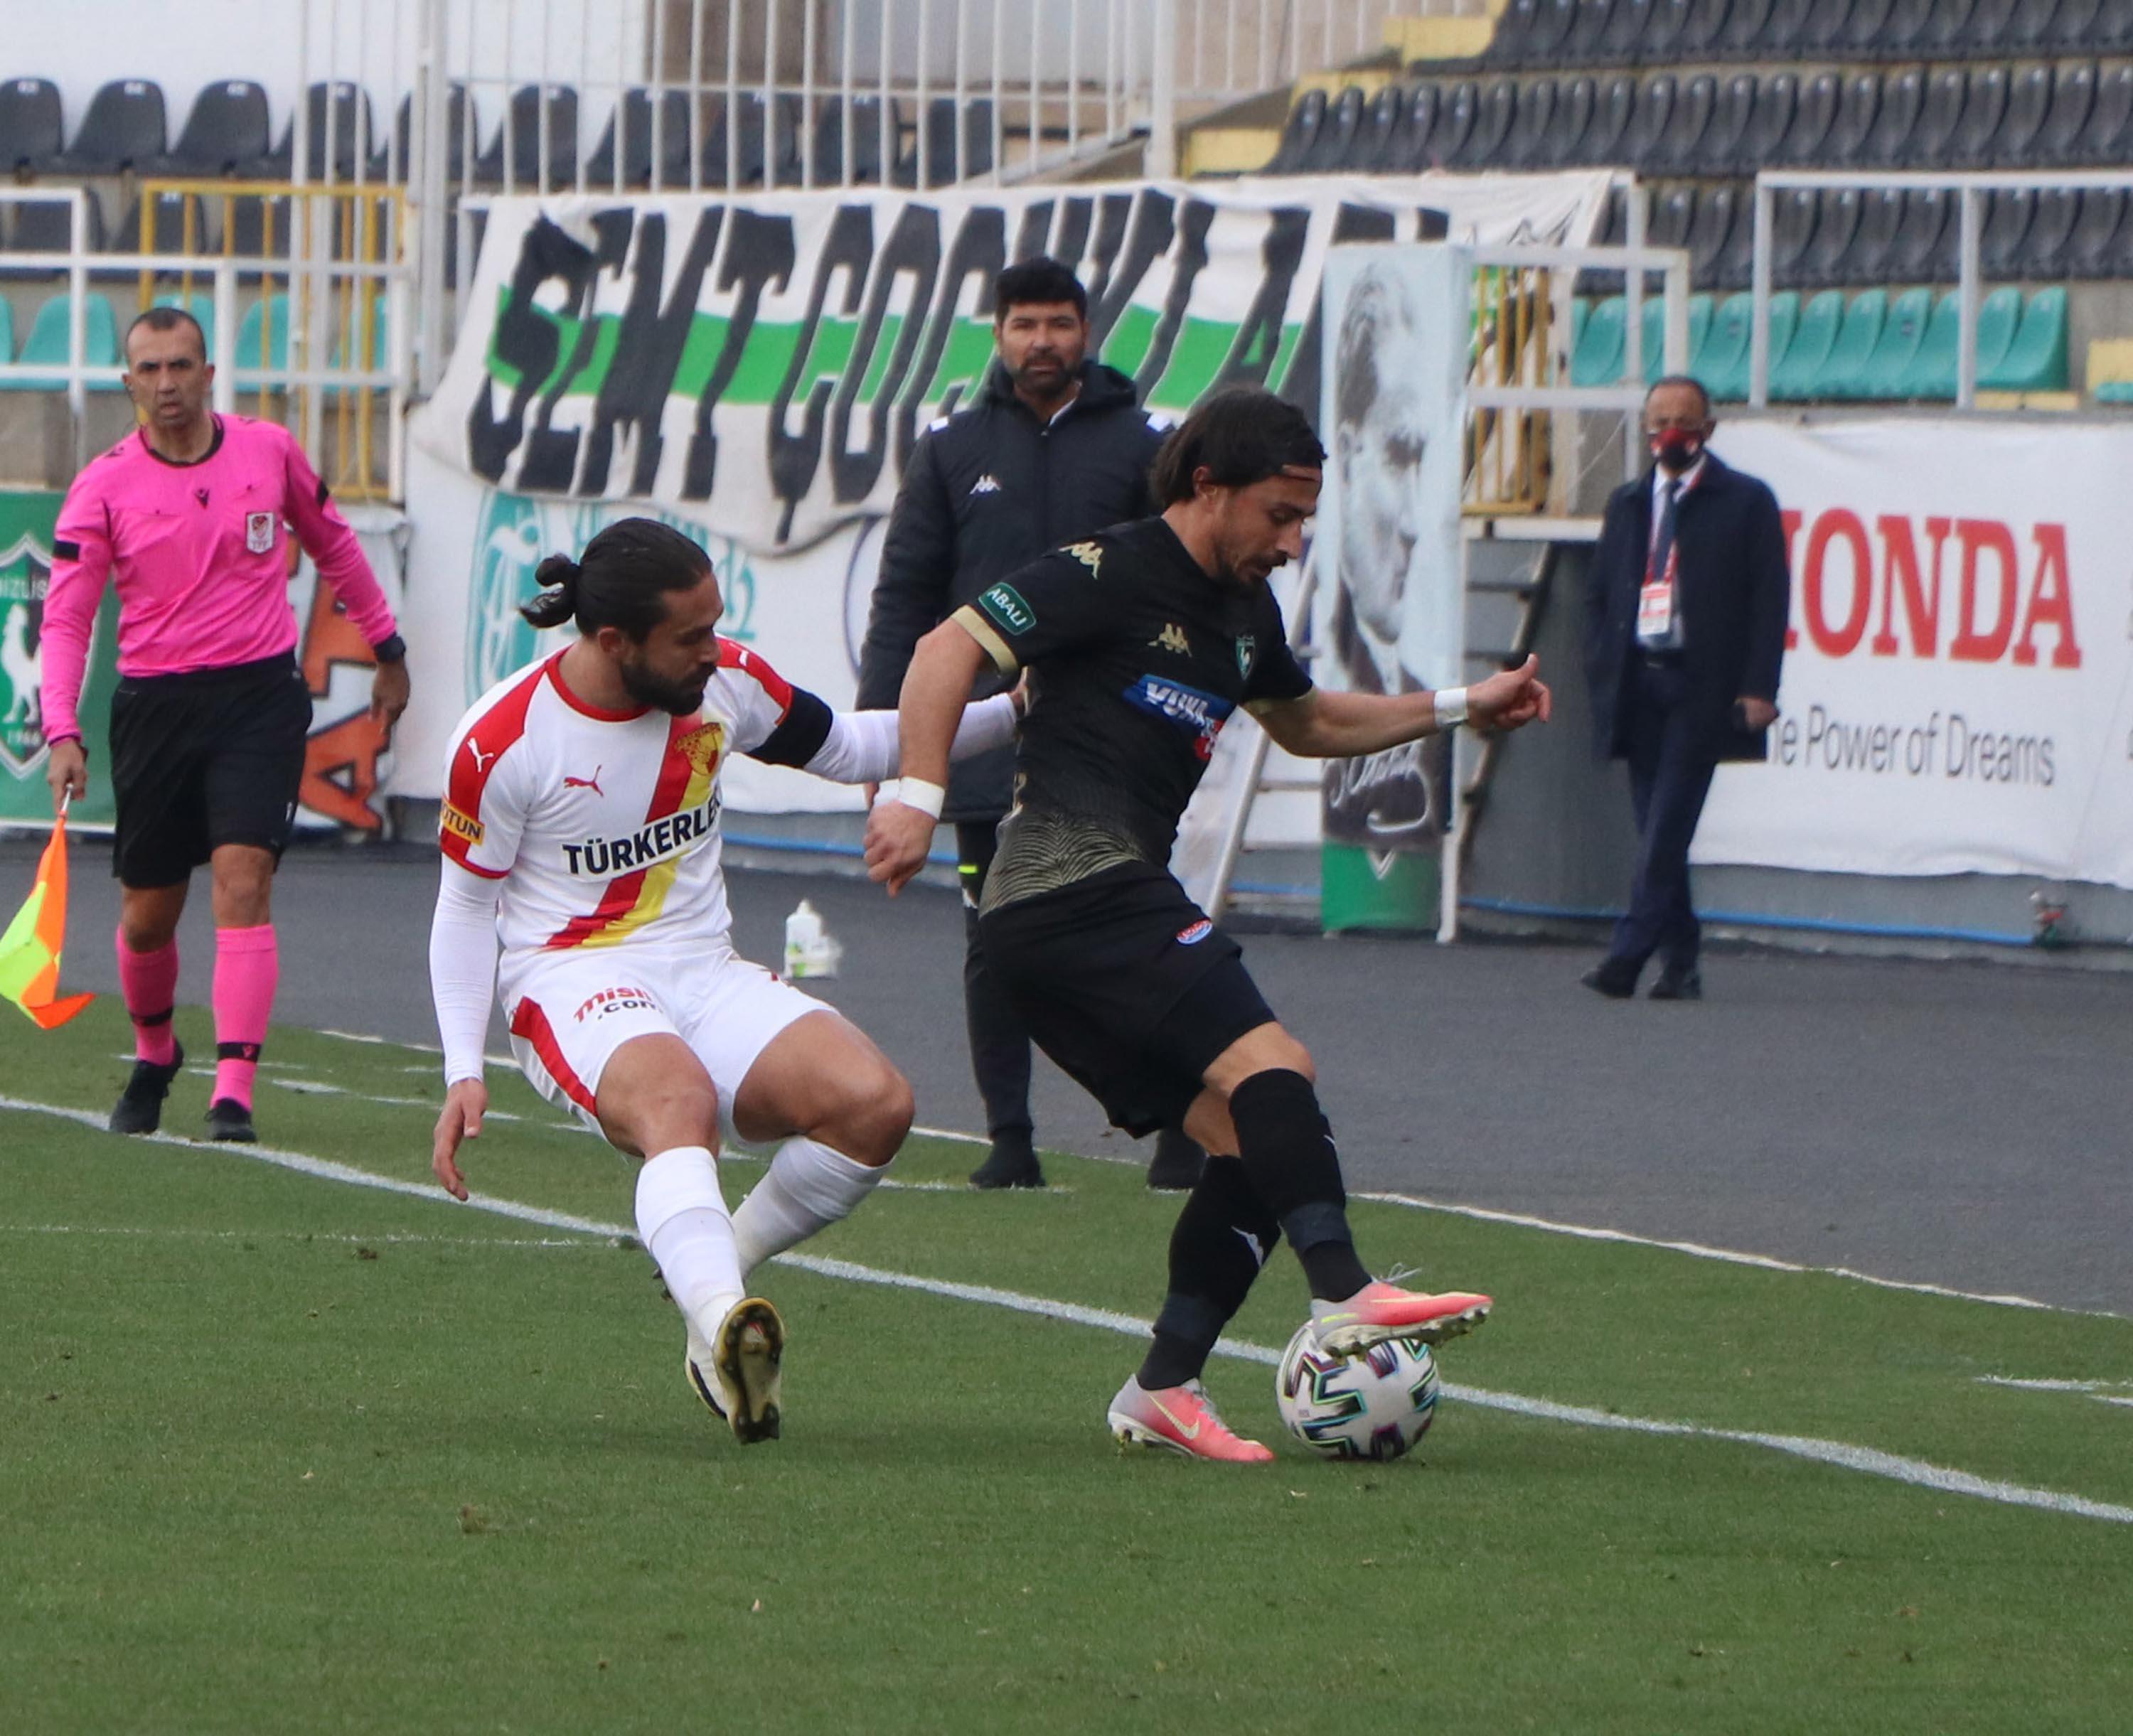 ÖZET | Denizlispor - Göztepe maç sonucu: 2-1